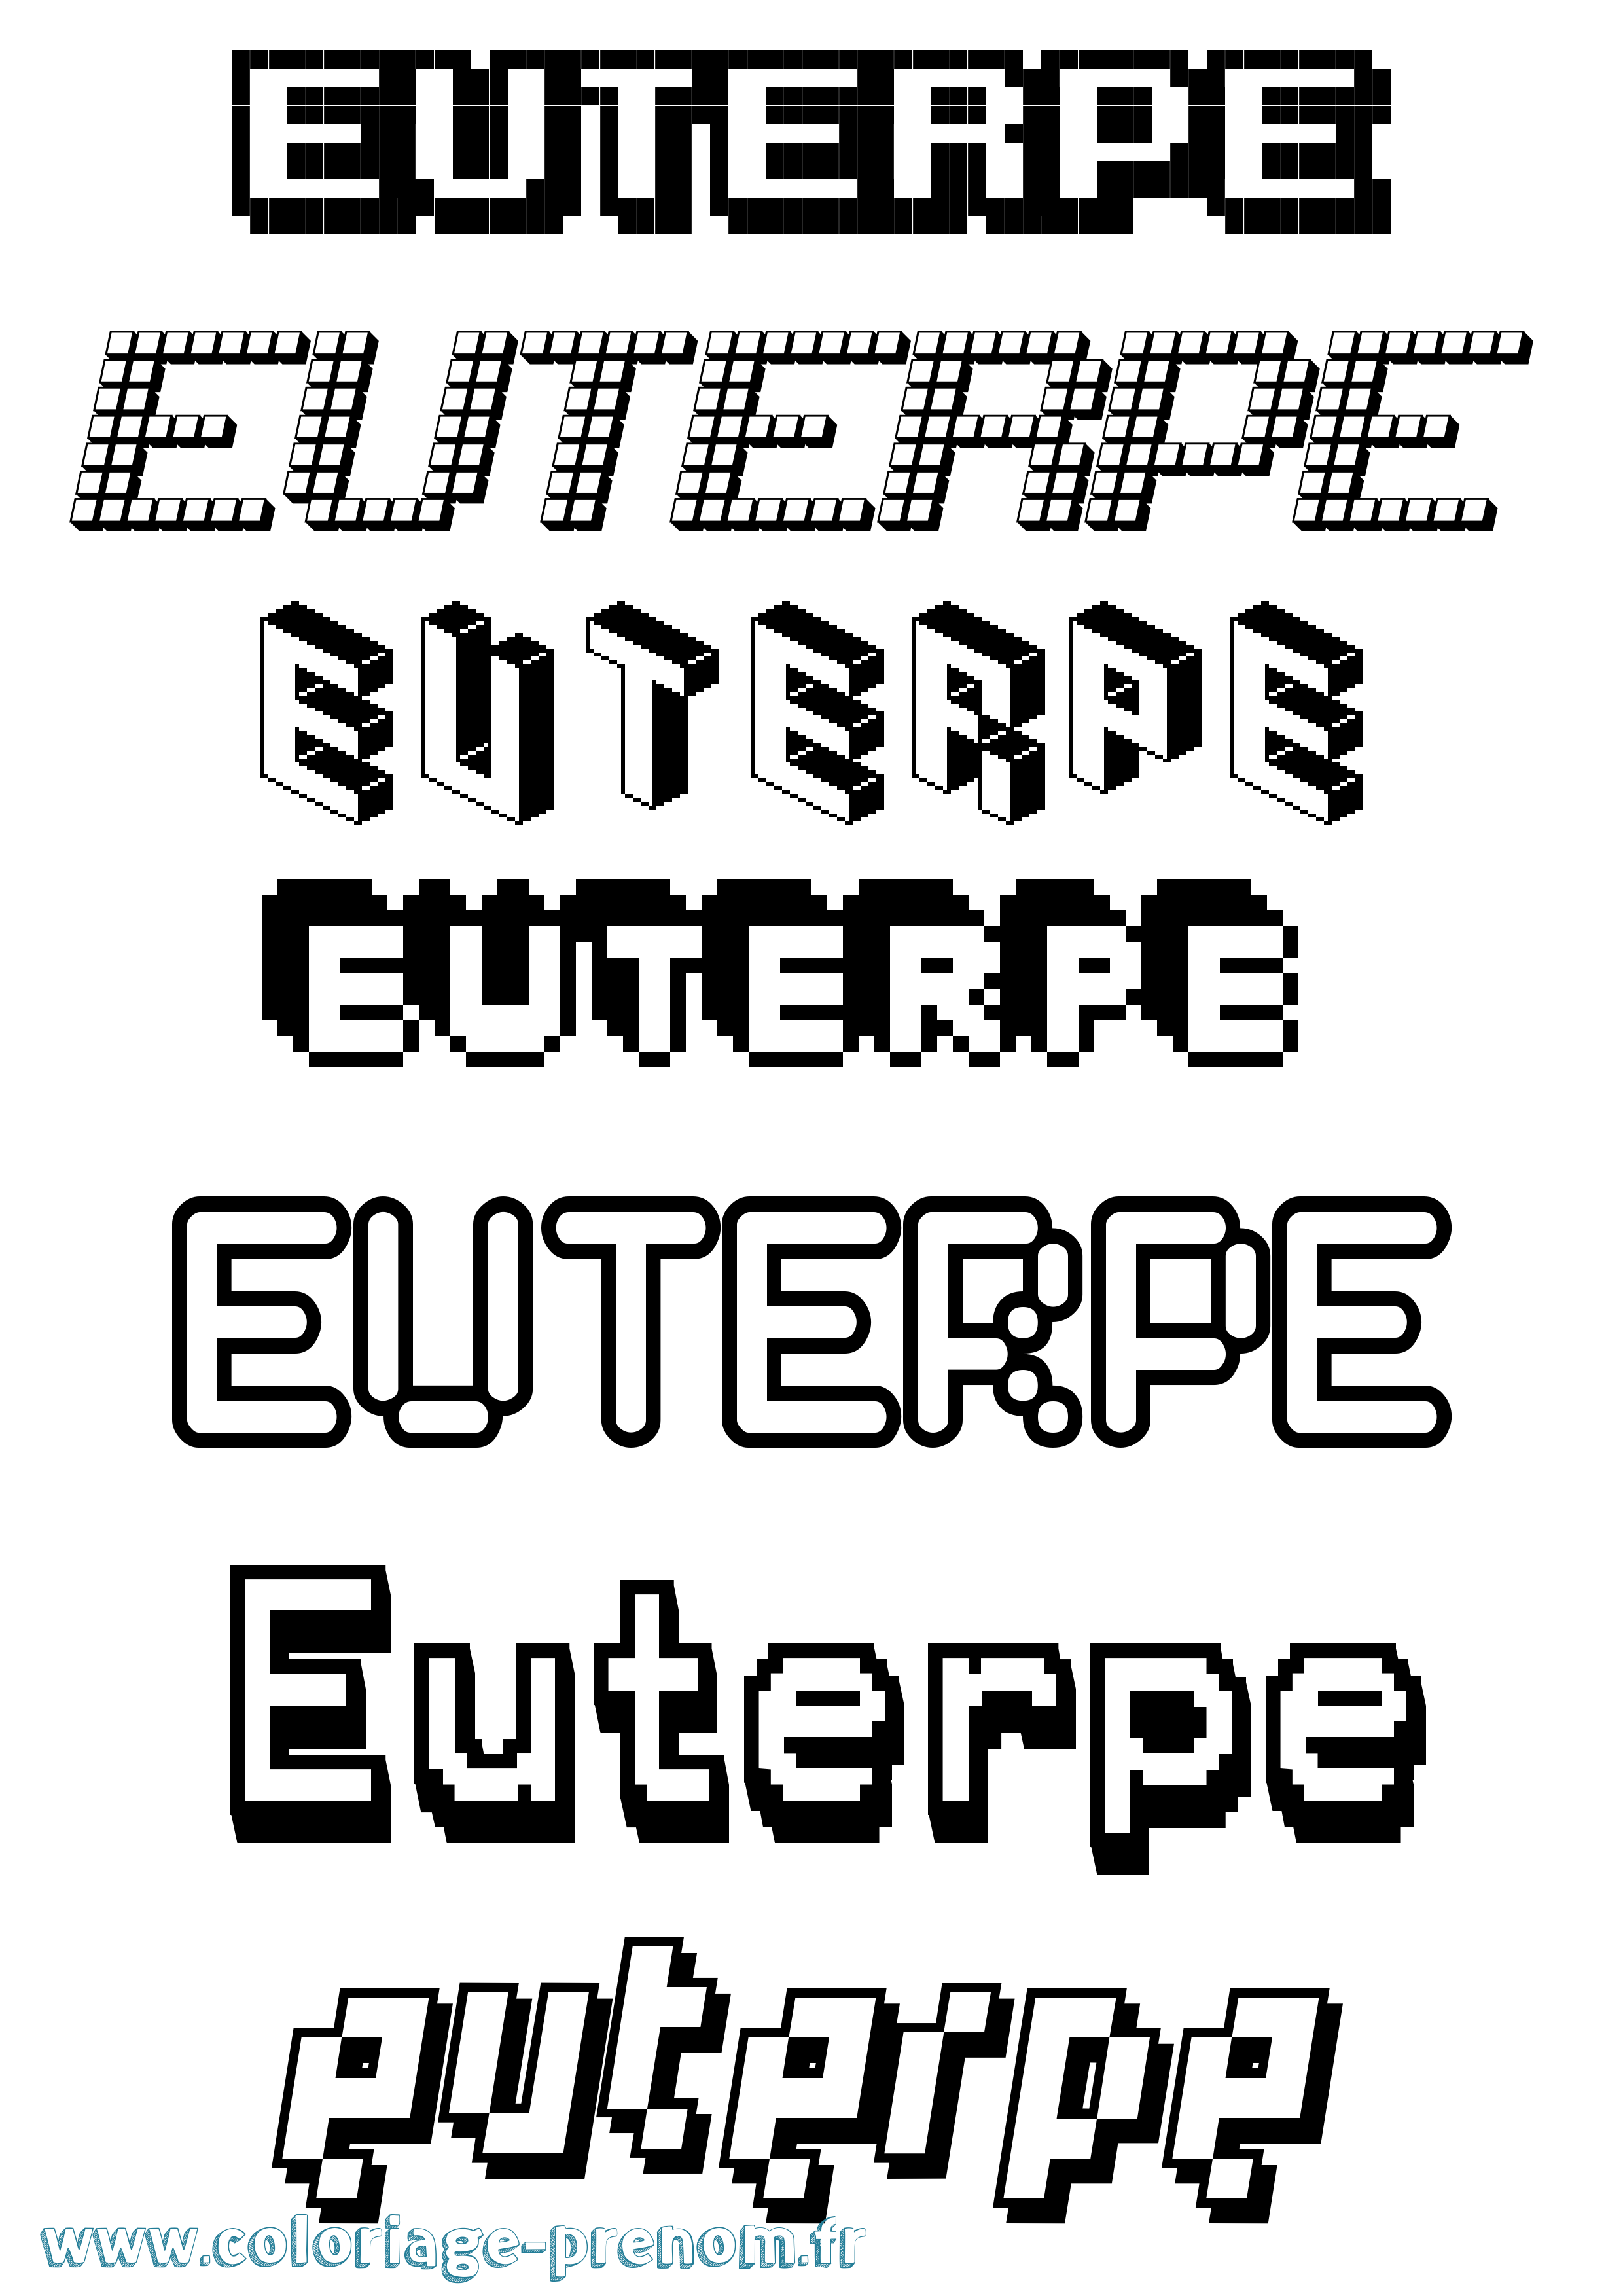 Coloriage prénom Euterpe Pixel